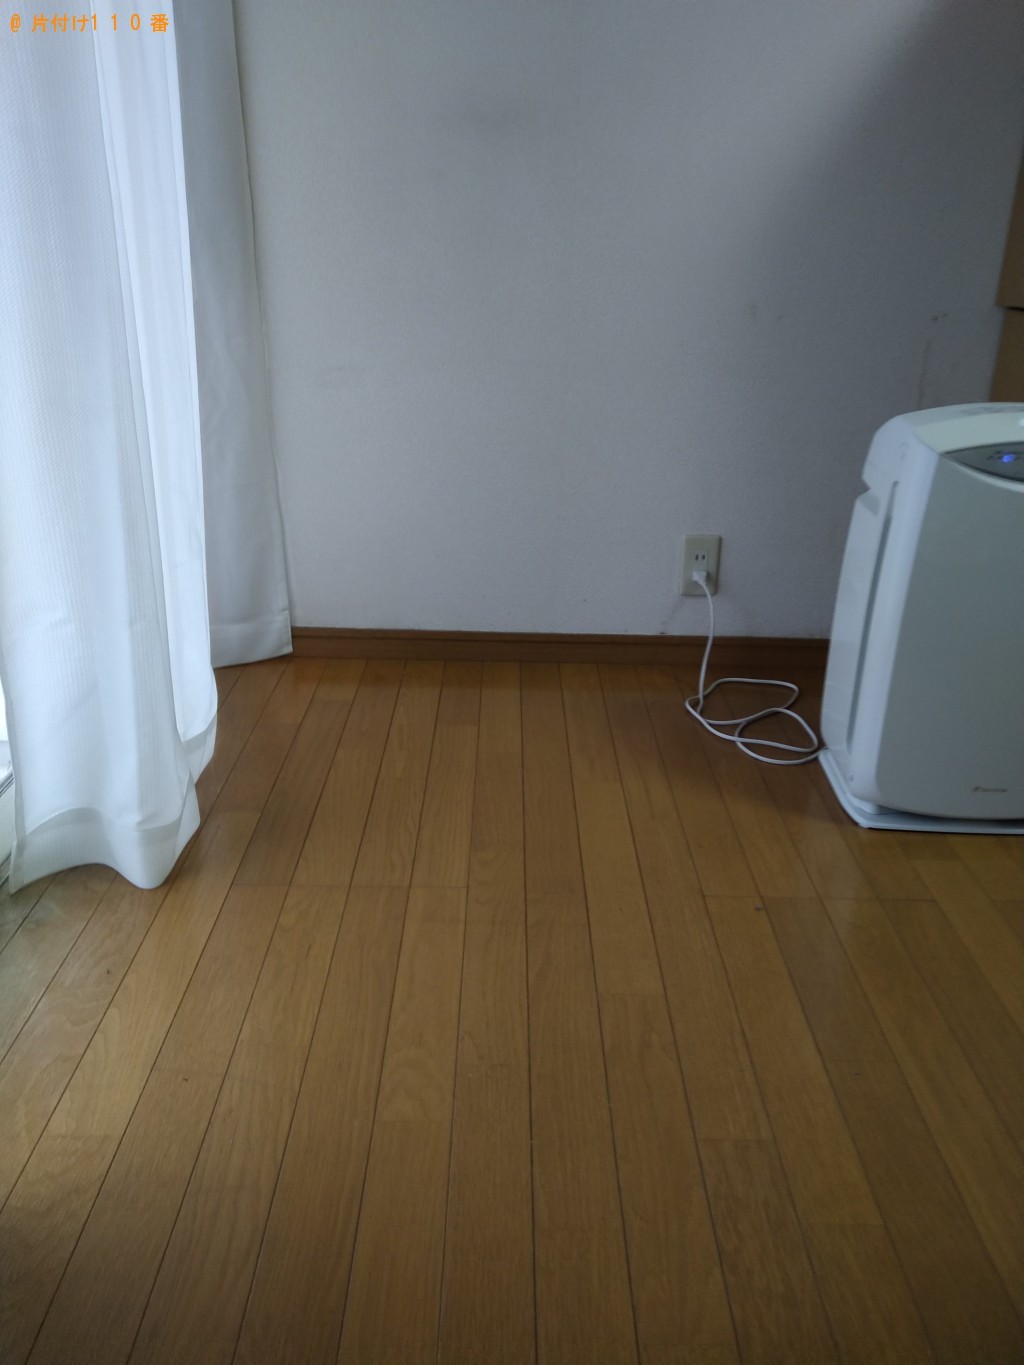 【筑西市】ガスコンロ、シングルベッド、テレビ台の回収・処分ご依頼